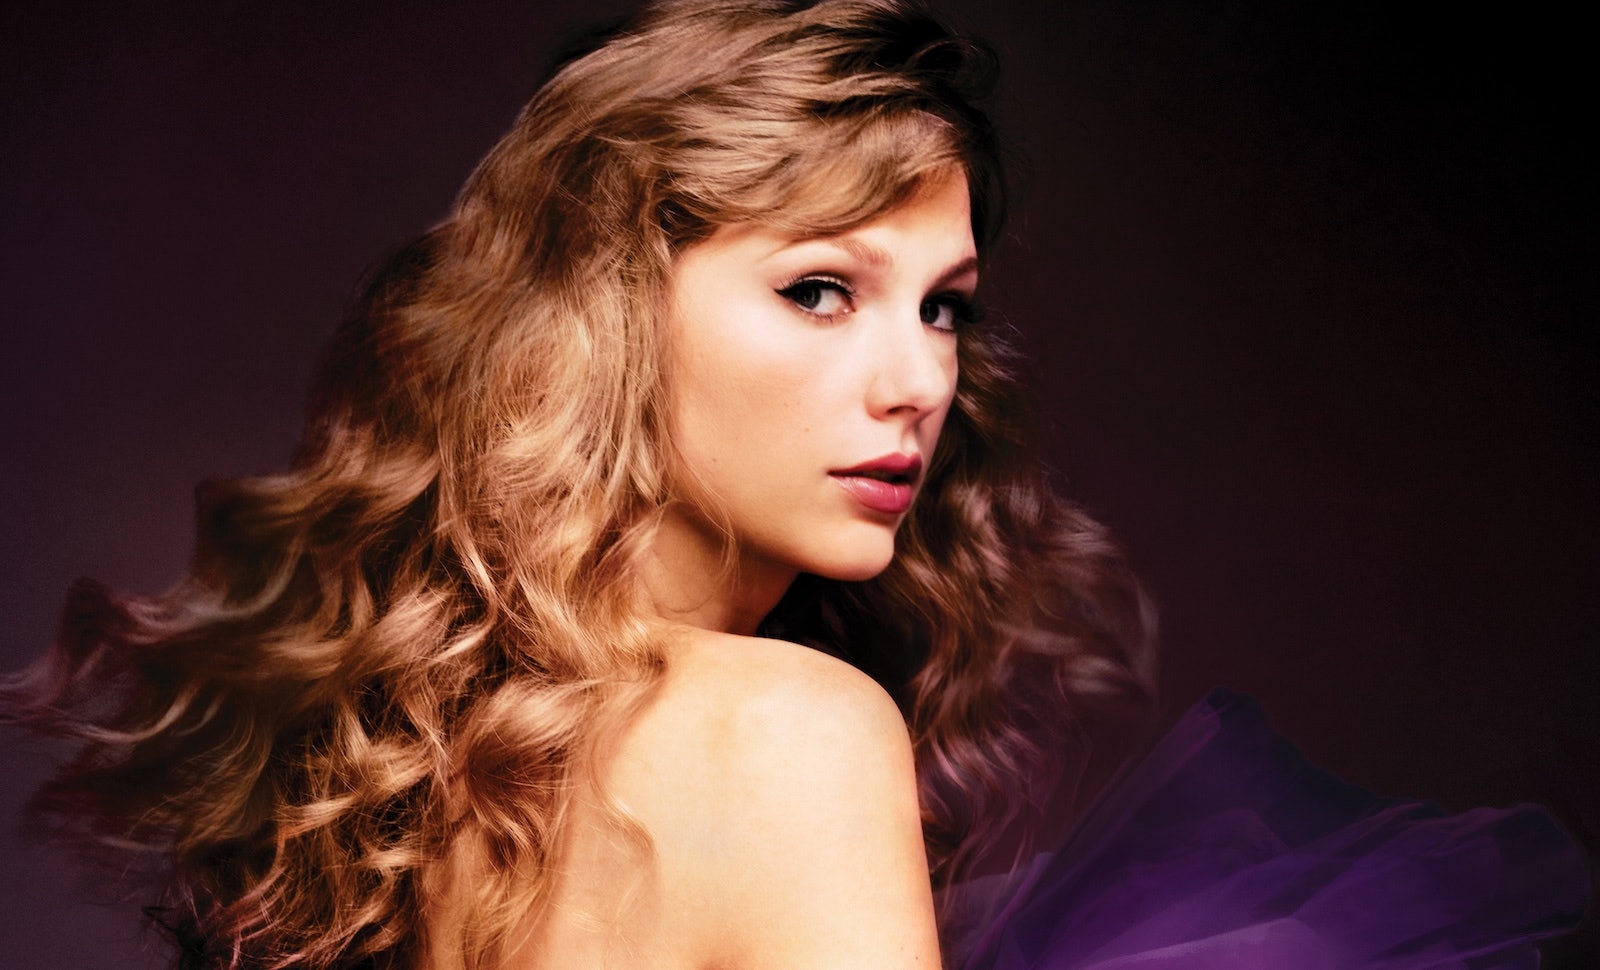 Taylor Swift announces 'Speak Now' (Taylor's Version)